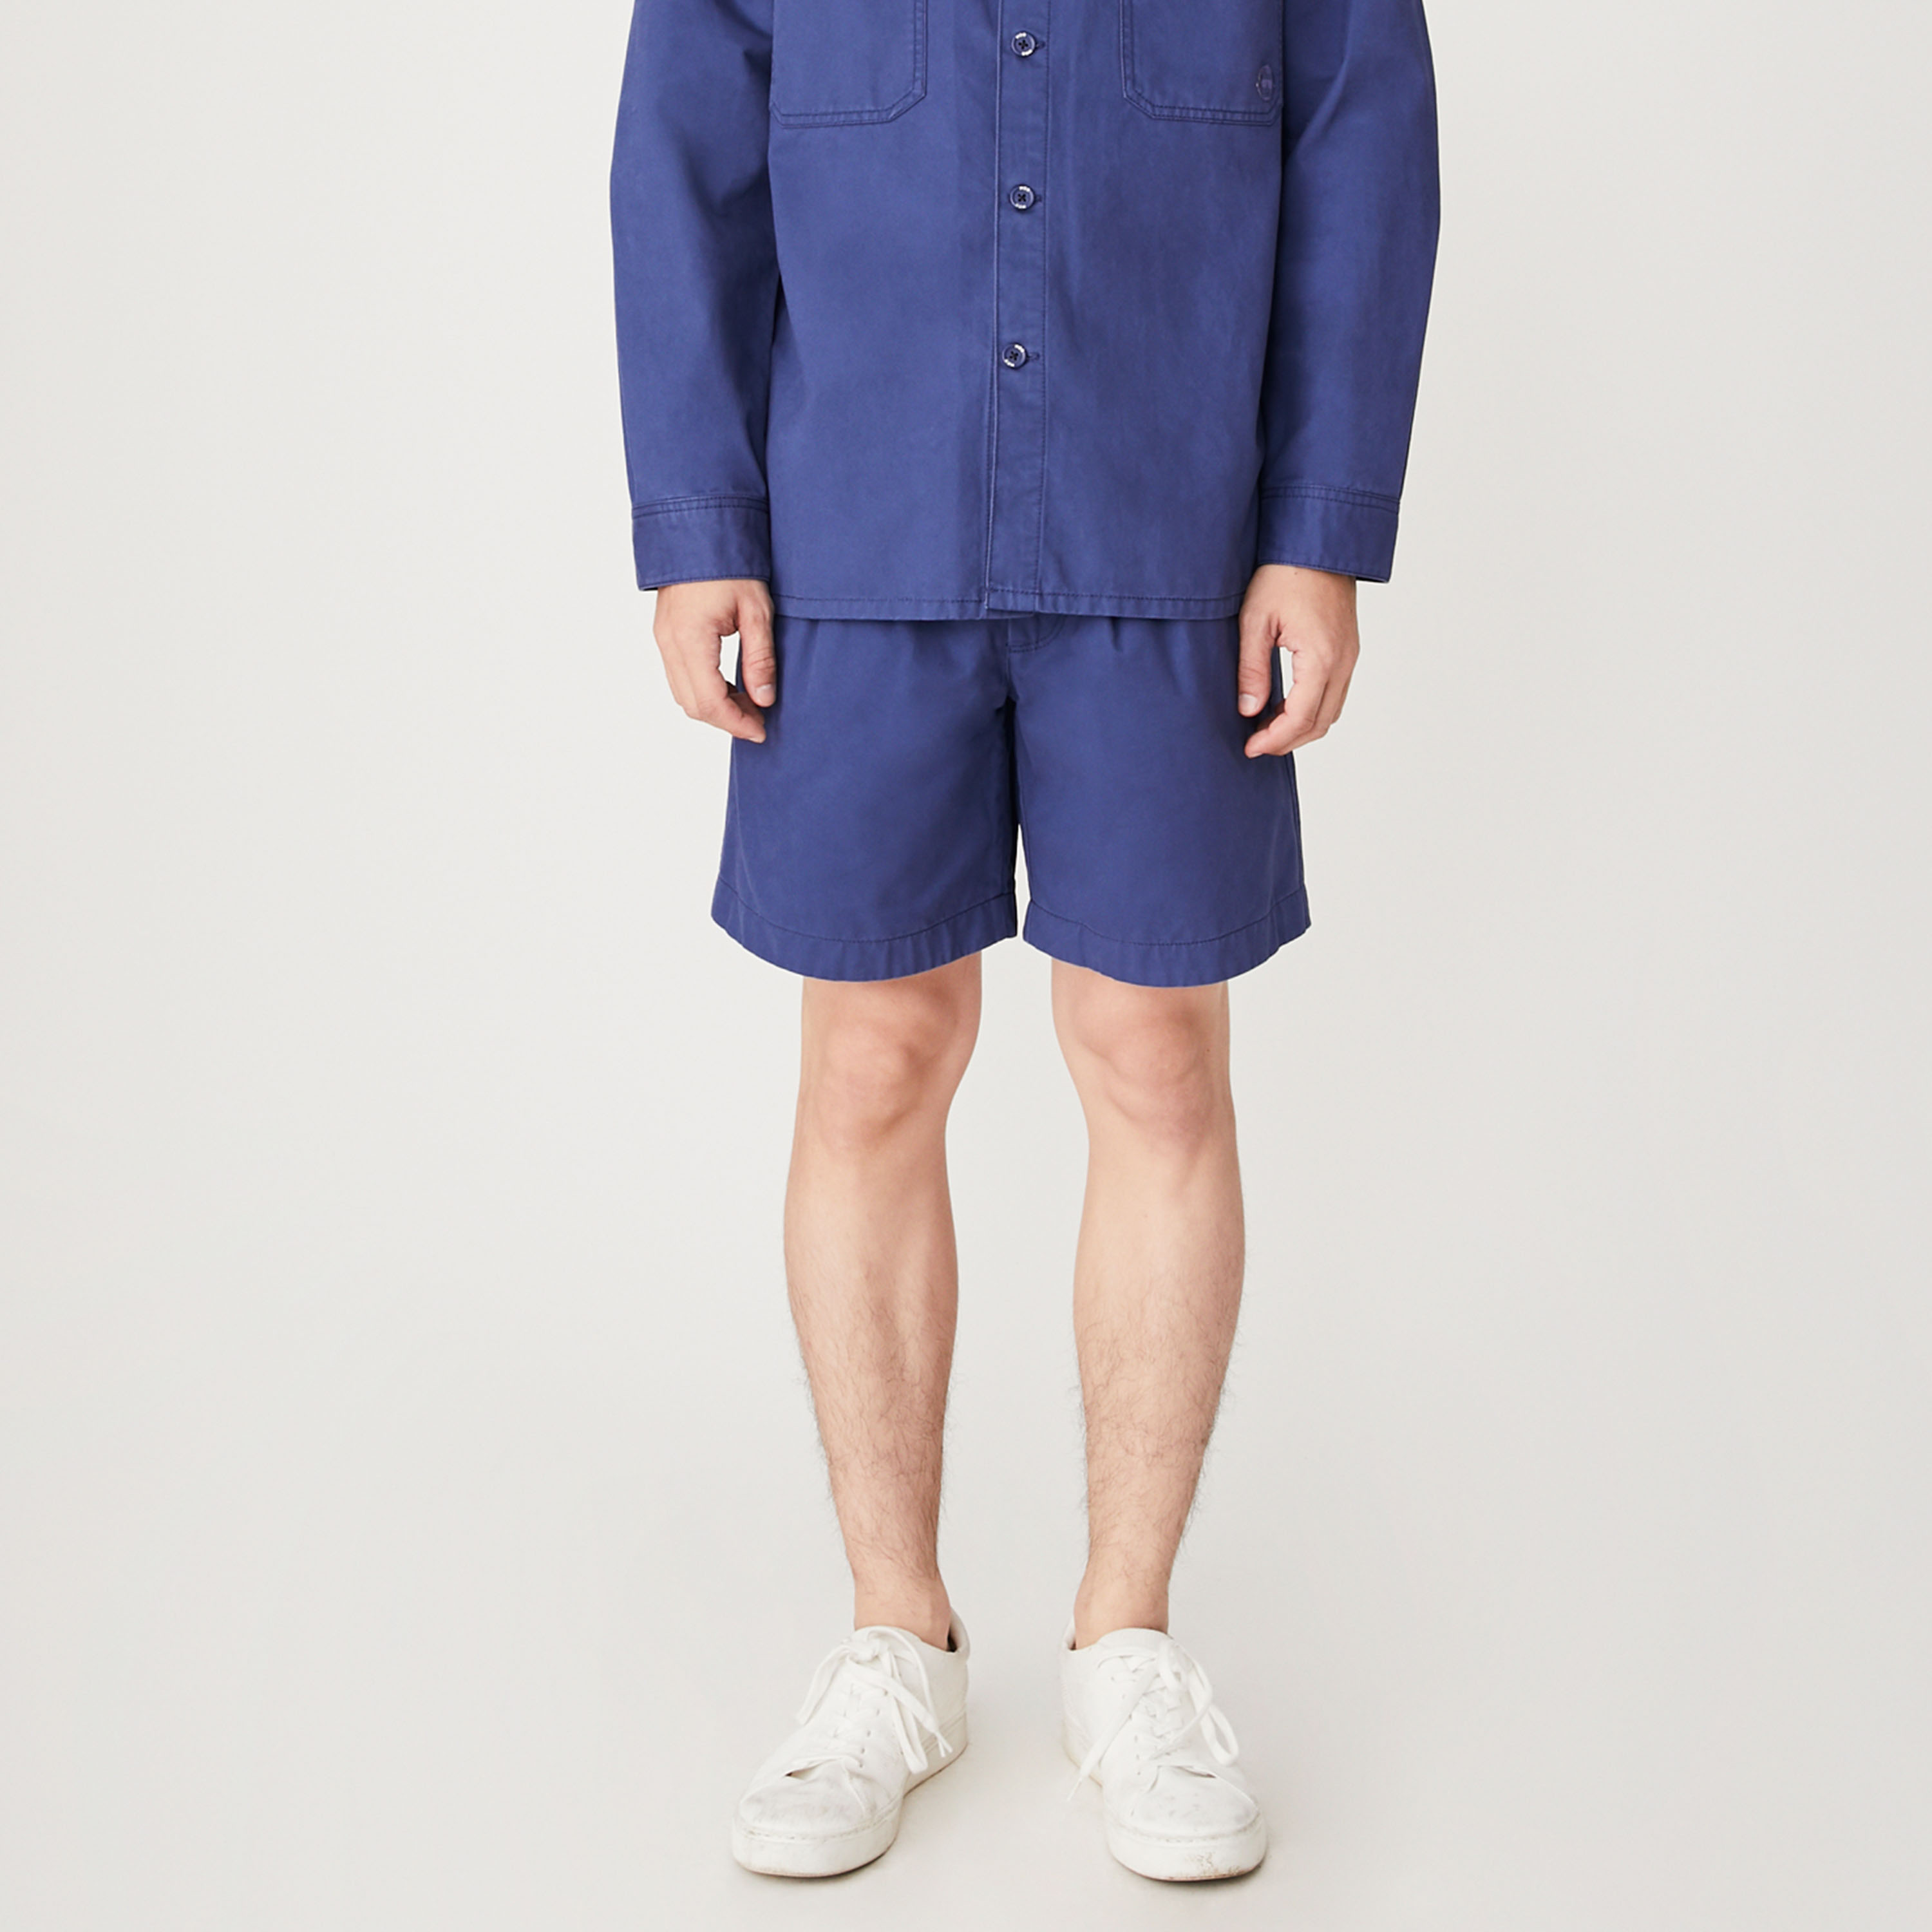 [2019/2] MOO Garment Washed Shorts  กางเกงขาสั้นผู้ชาย ฟอกสีพิเศษ